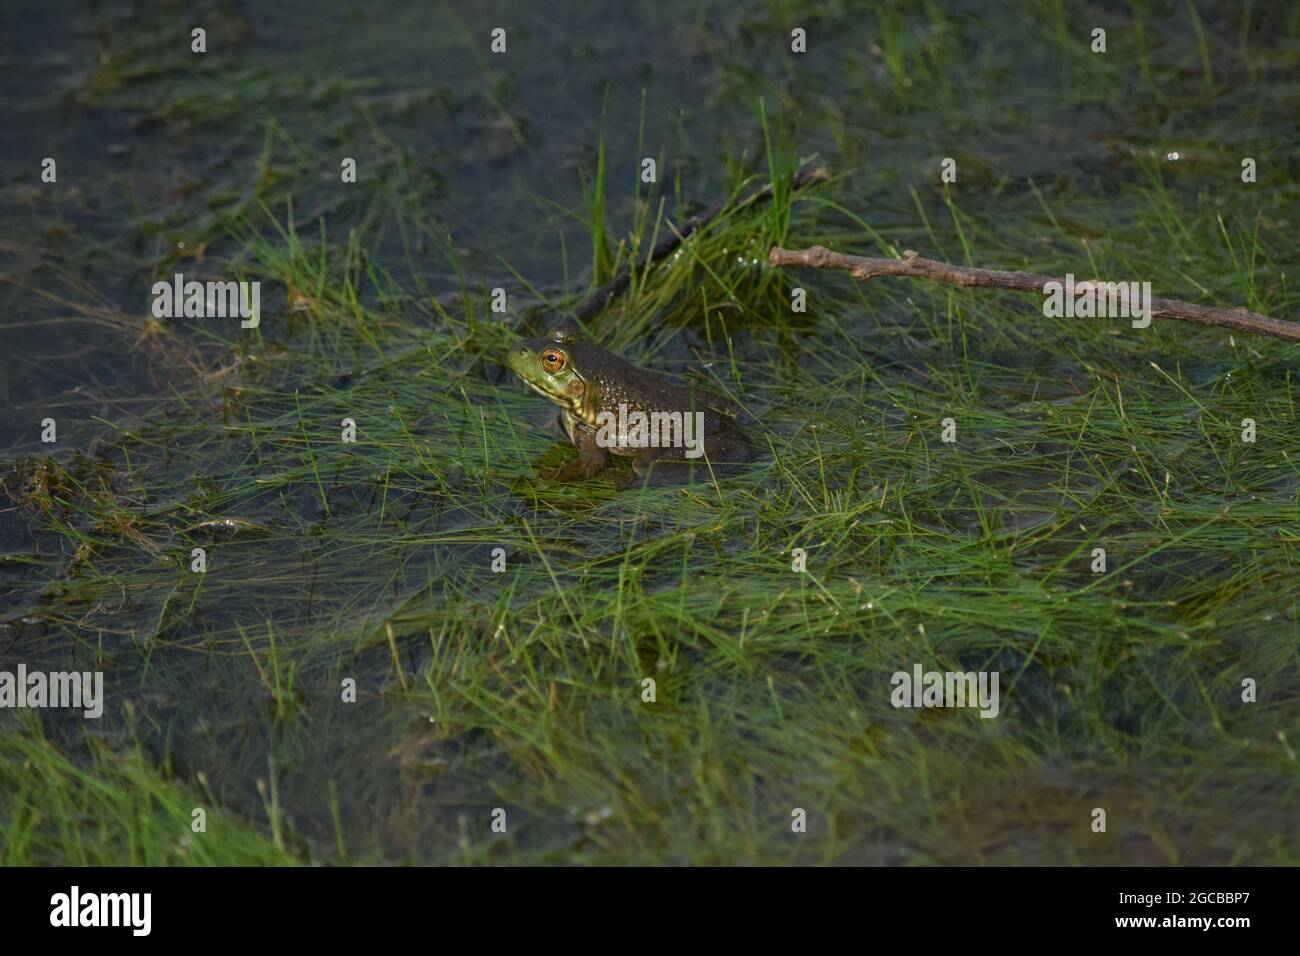 American Bullfrog in Pond Stock Photo